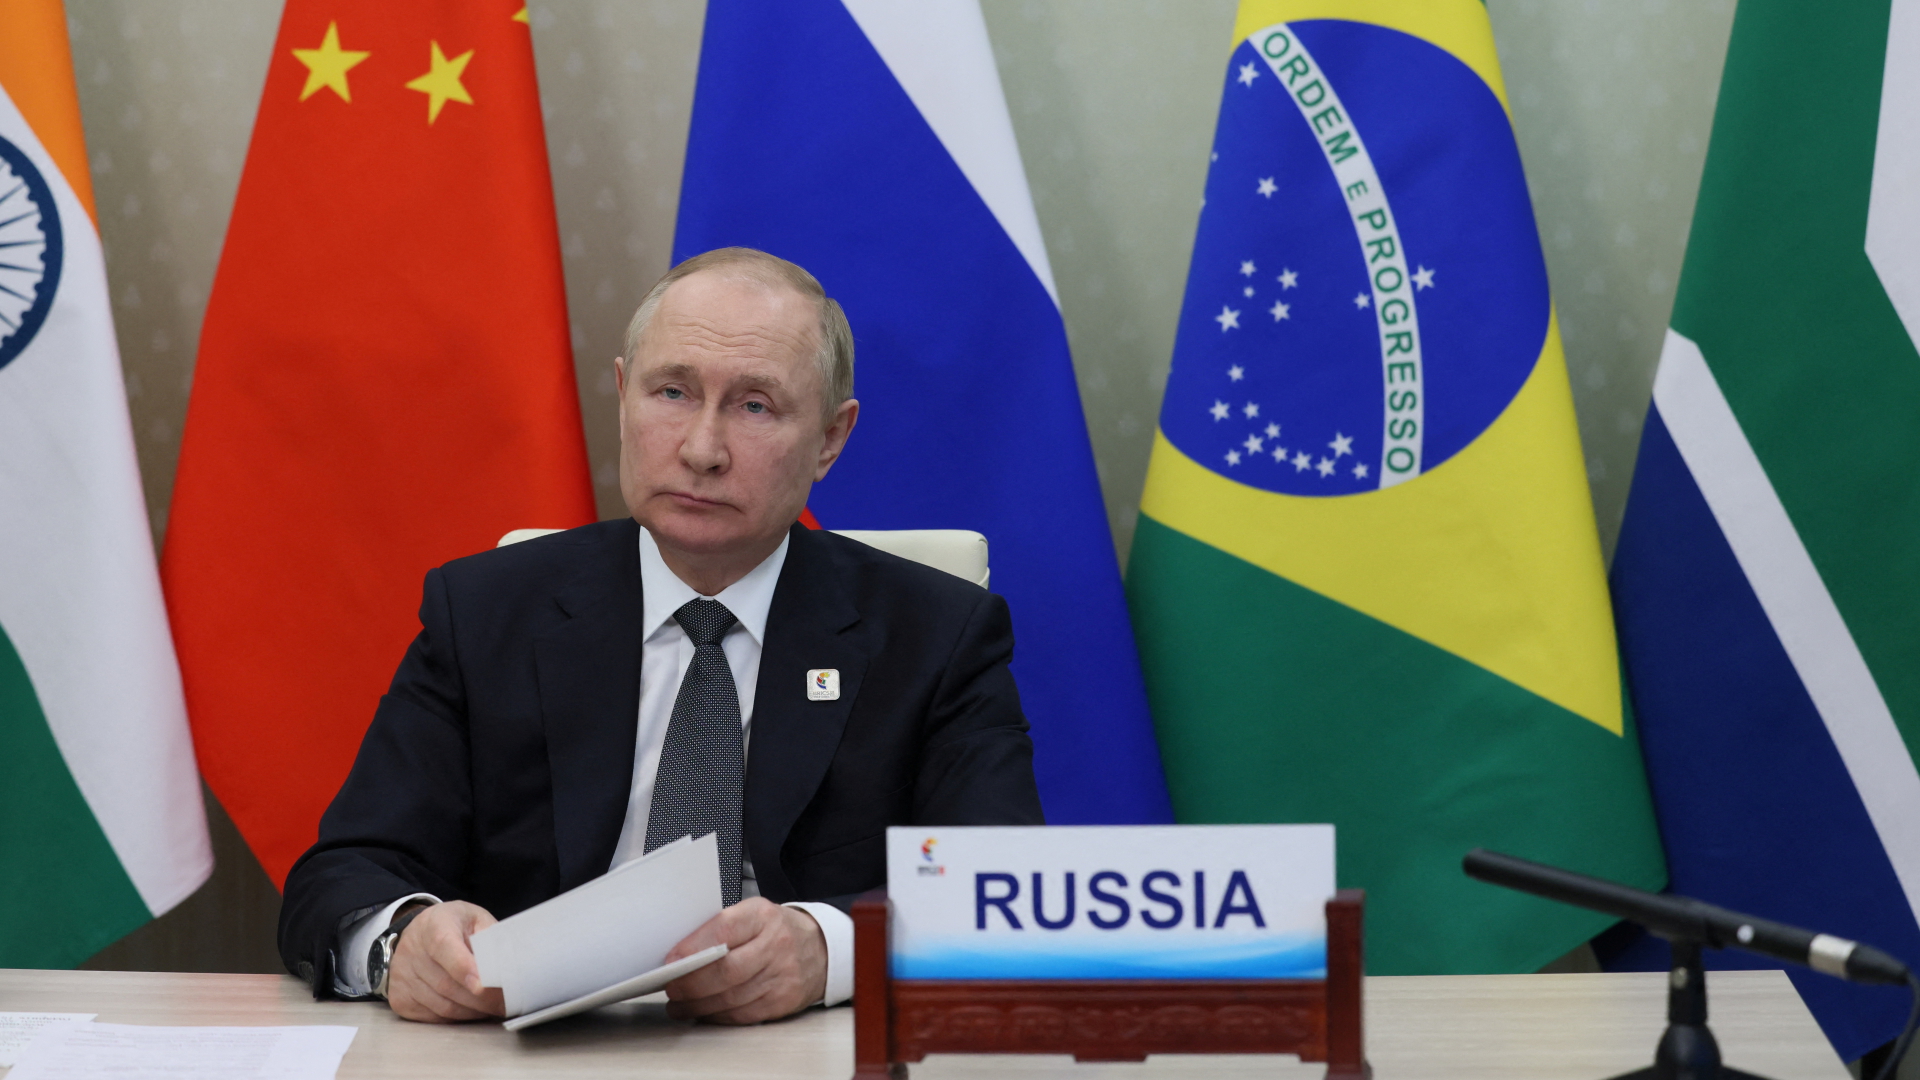 Russlands Präsident Wladimir Putin nimmt am BRICS-Gipfel teil | via REUTERS